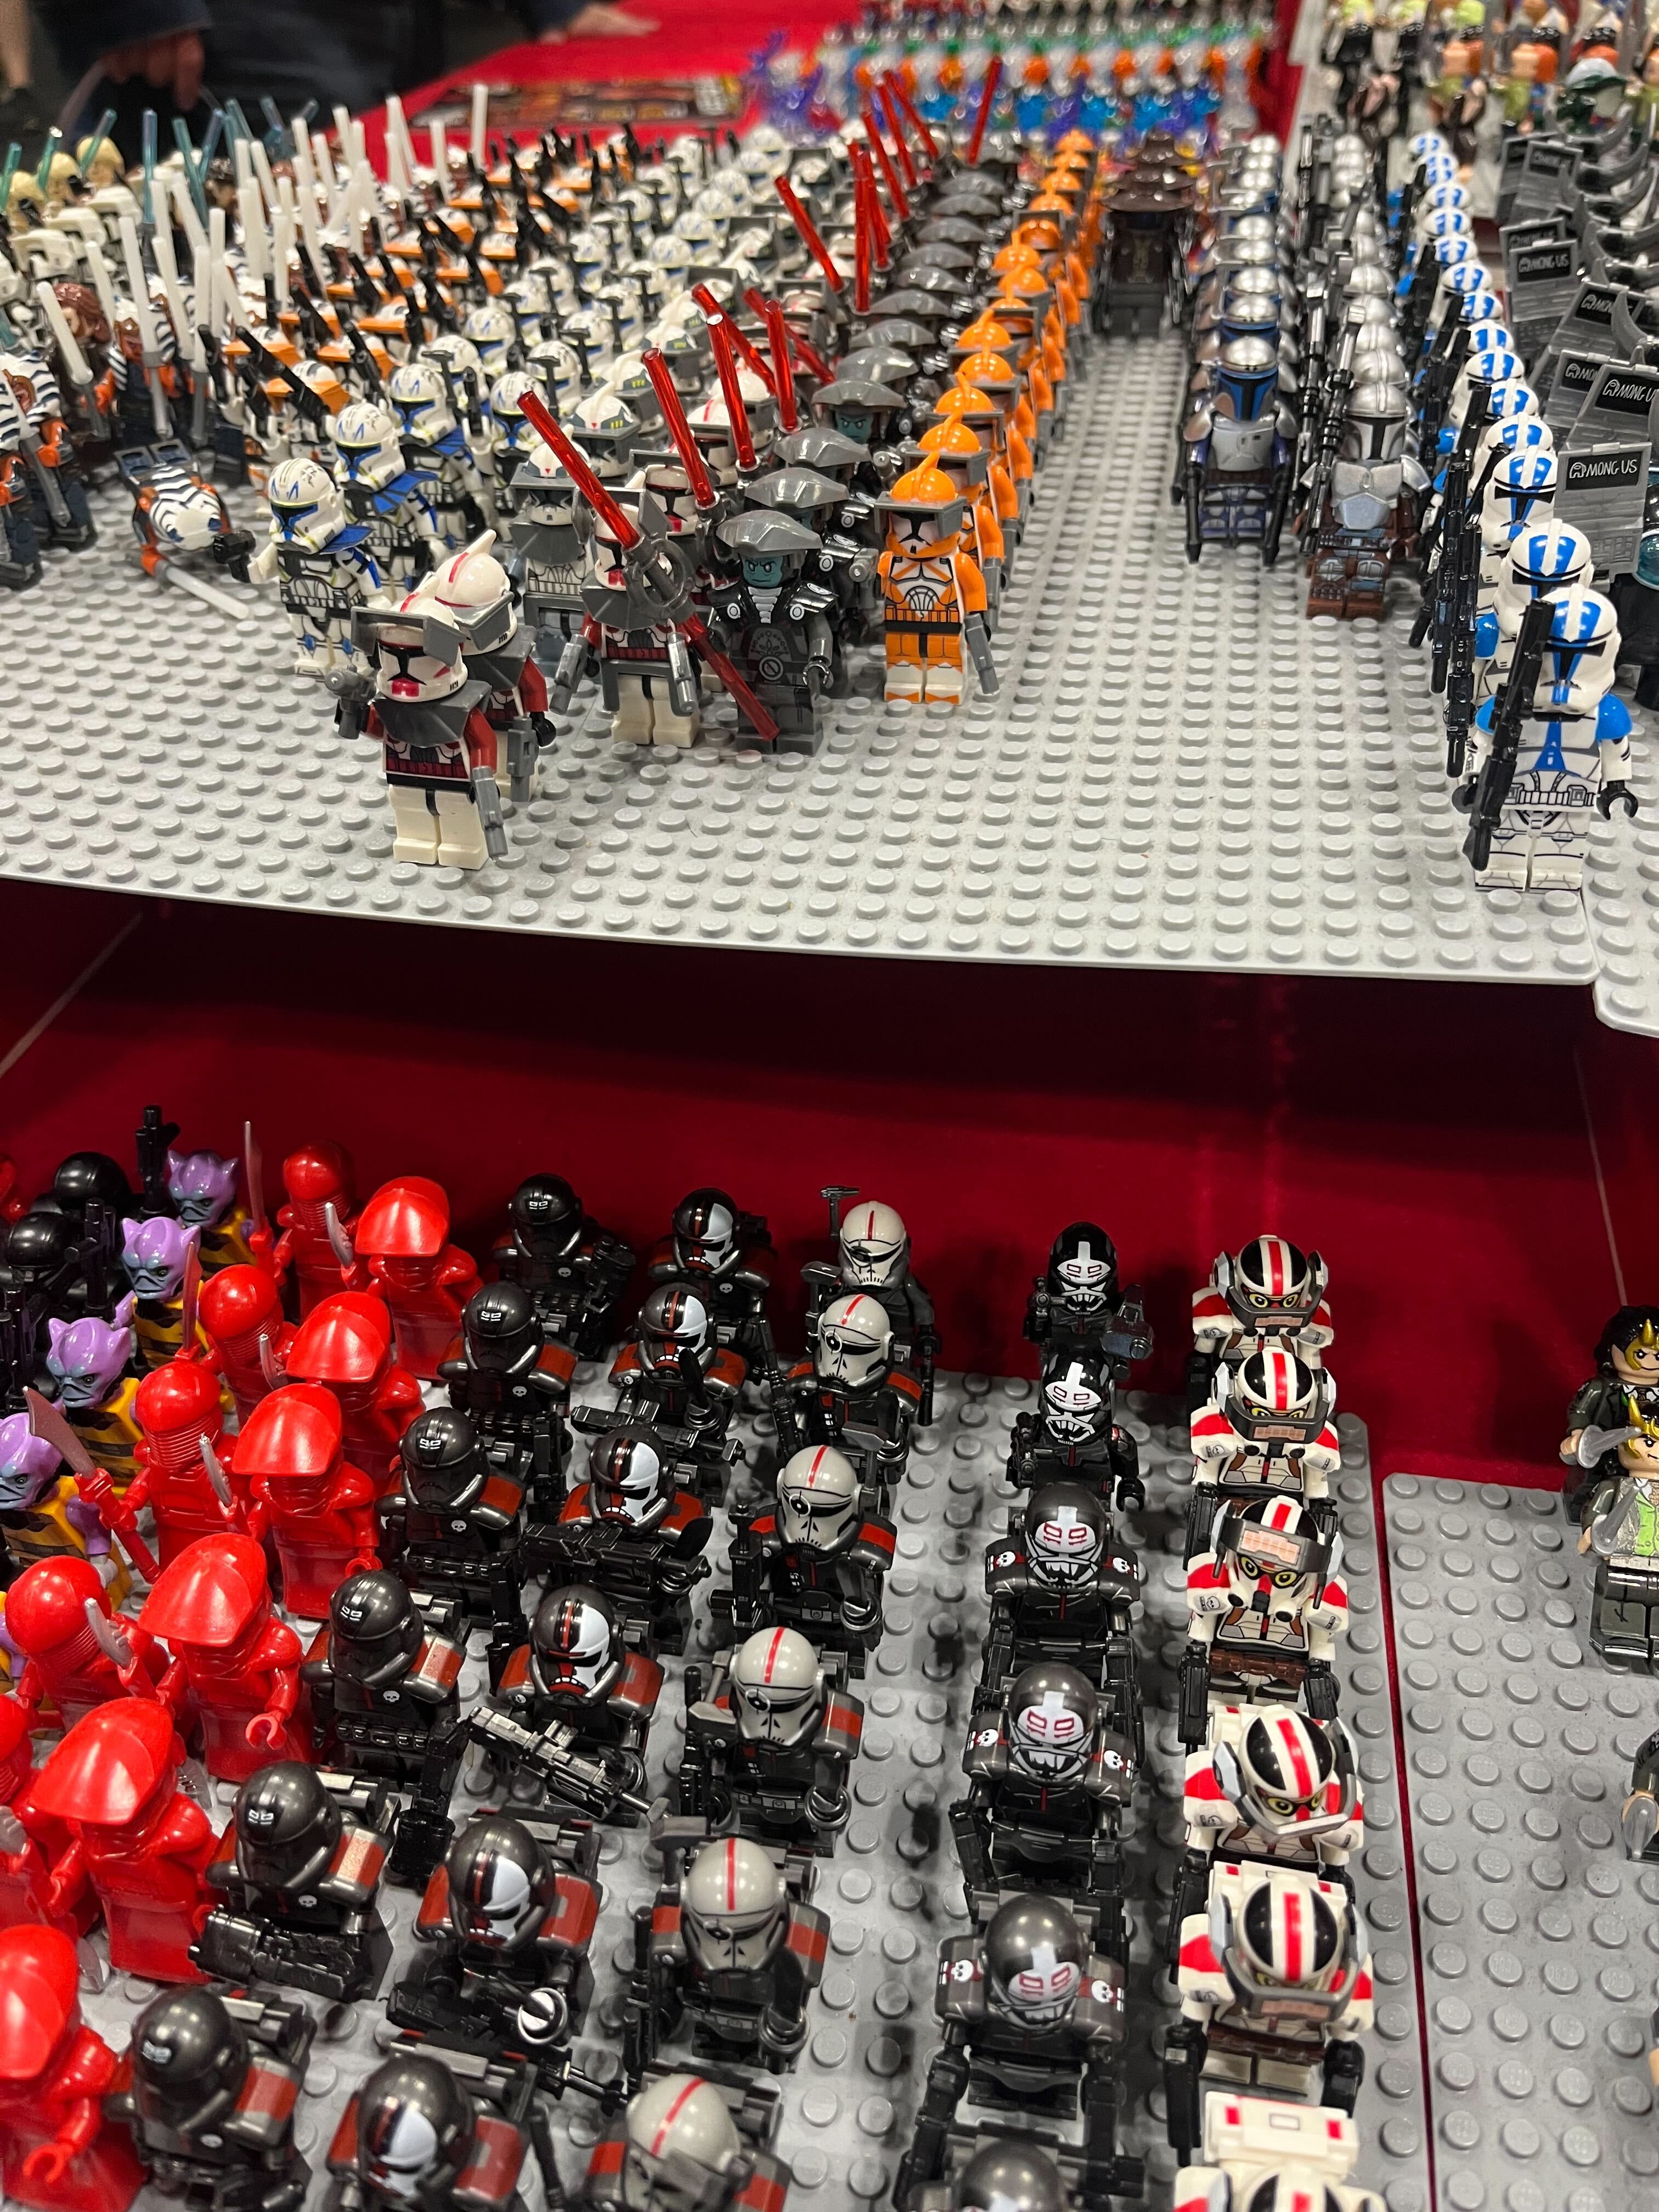 A ton of Lego mini-figures. 